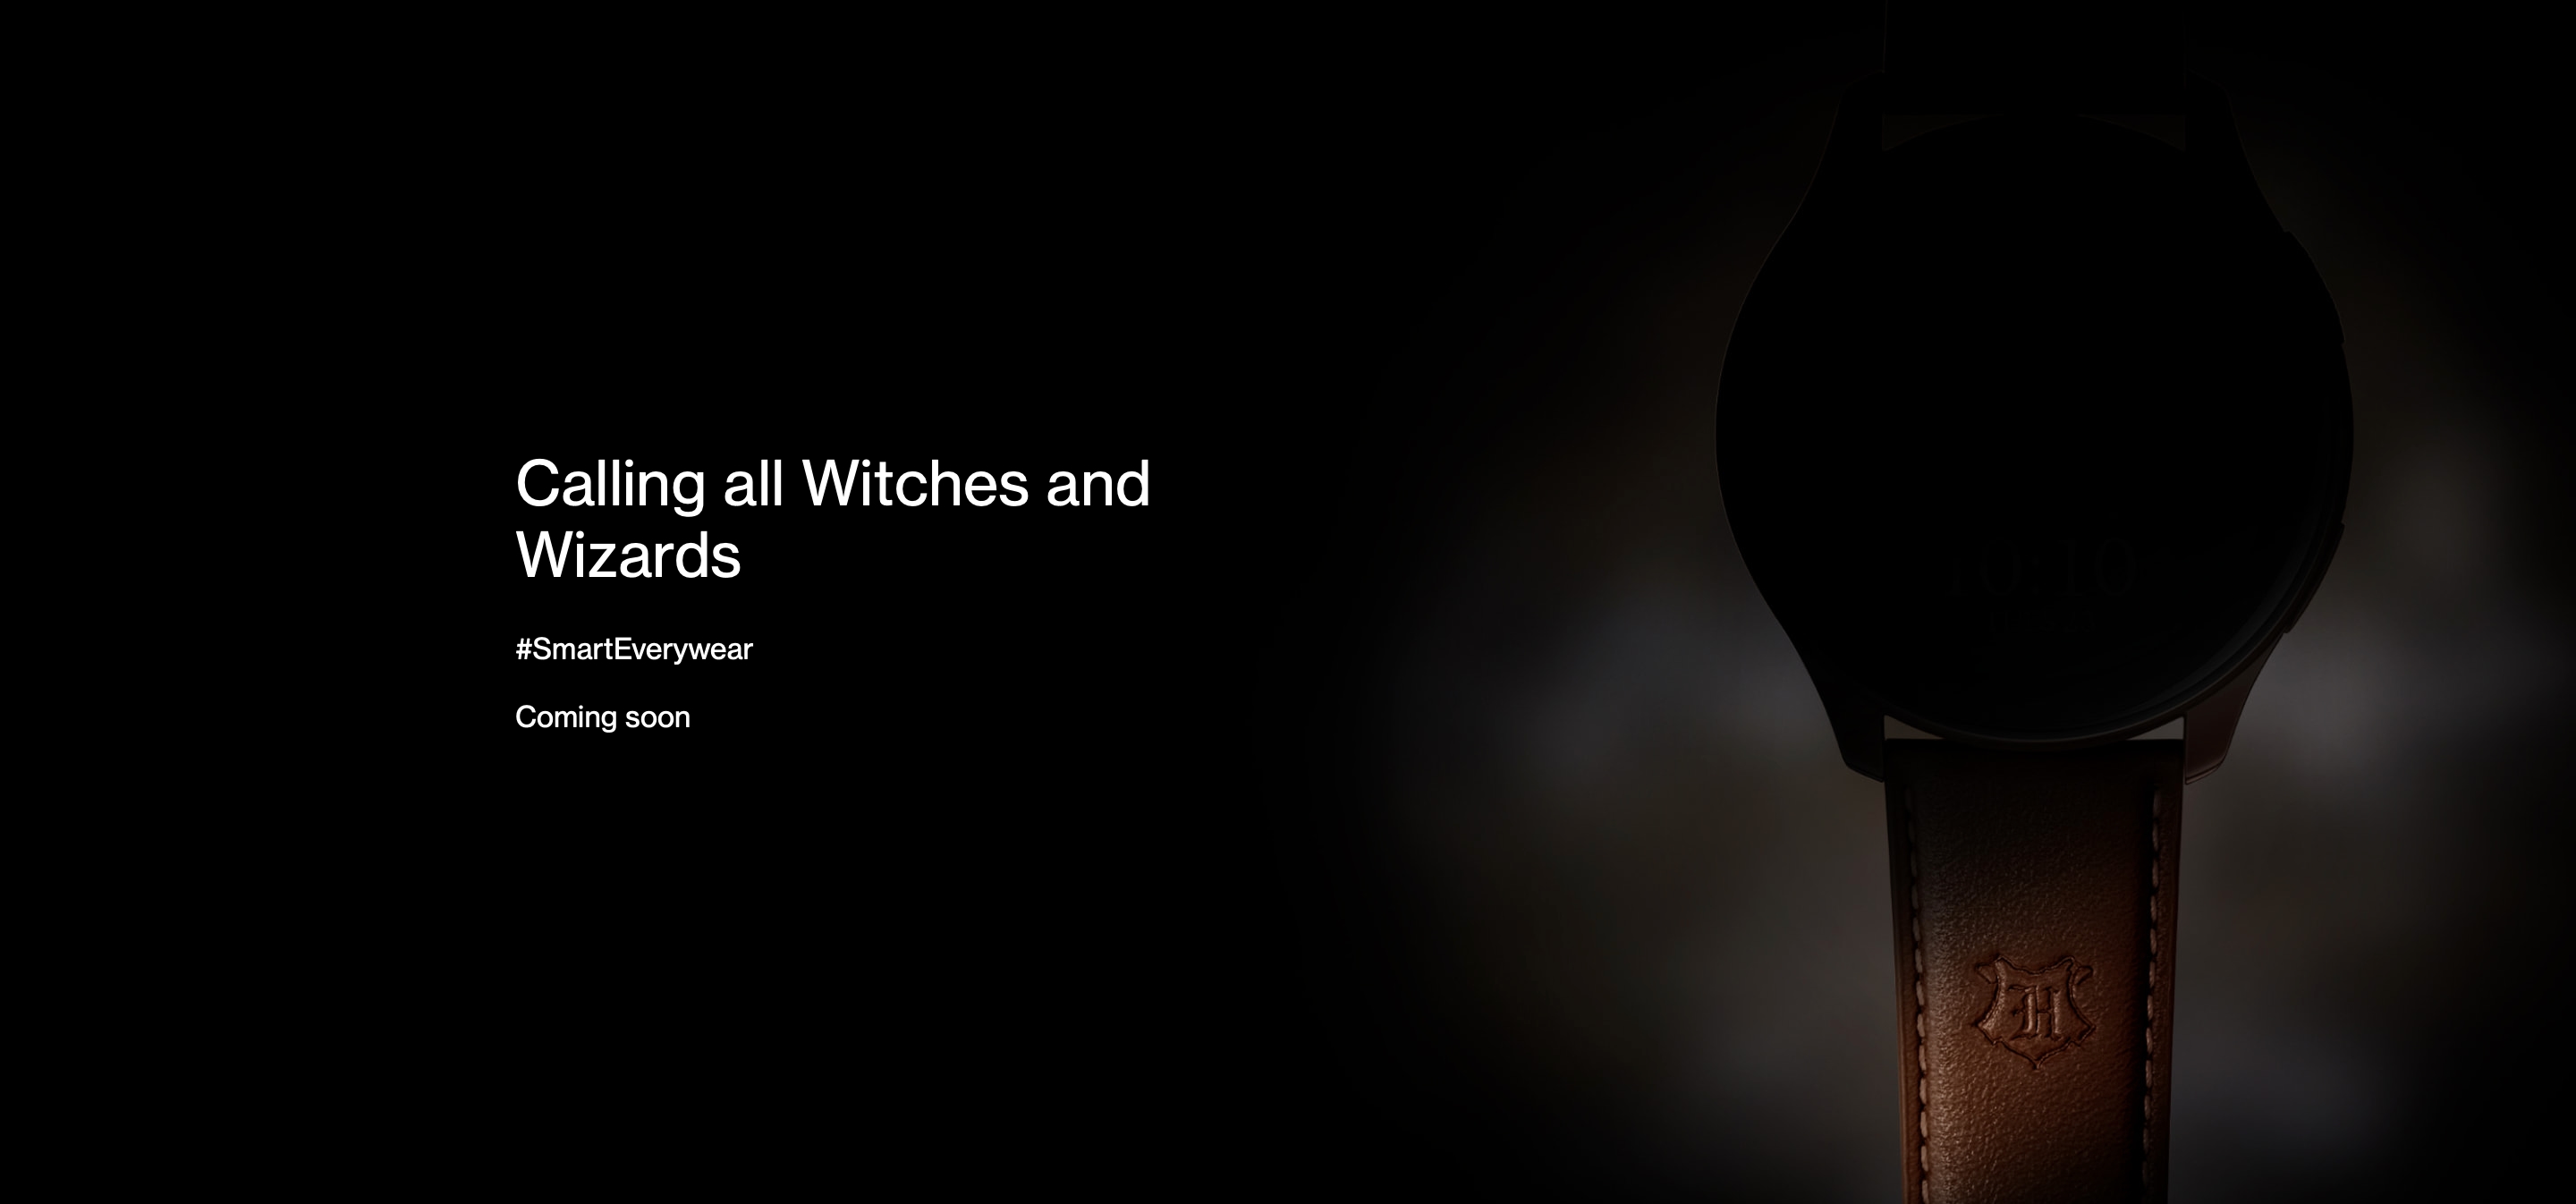 Annonce proche : OnePlus lance le teasing de la montre intelligente OnePlus Watch édition Harry Potter